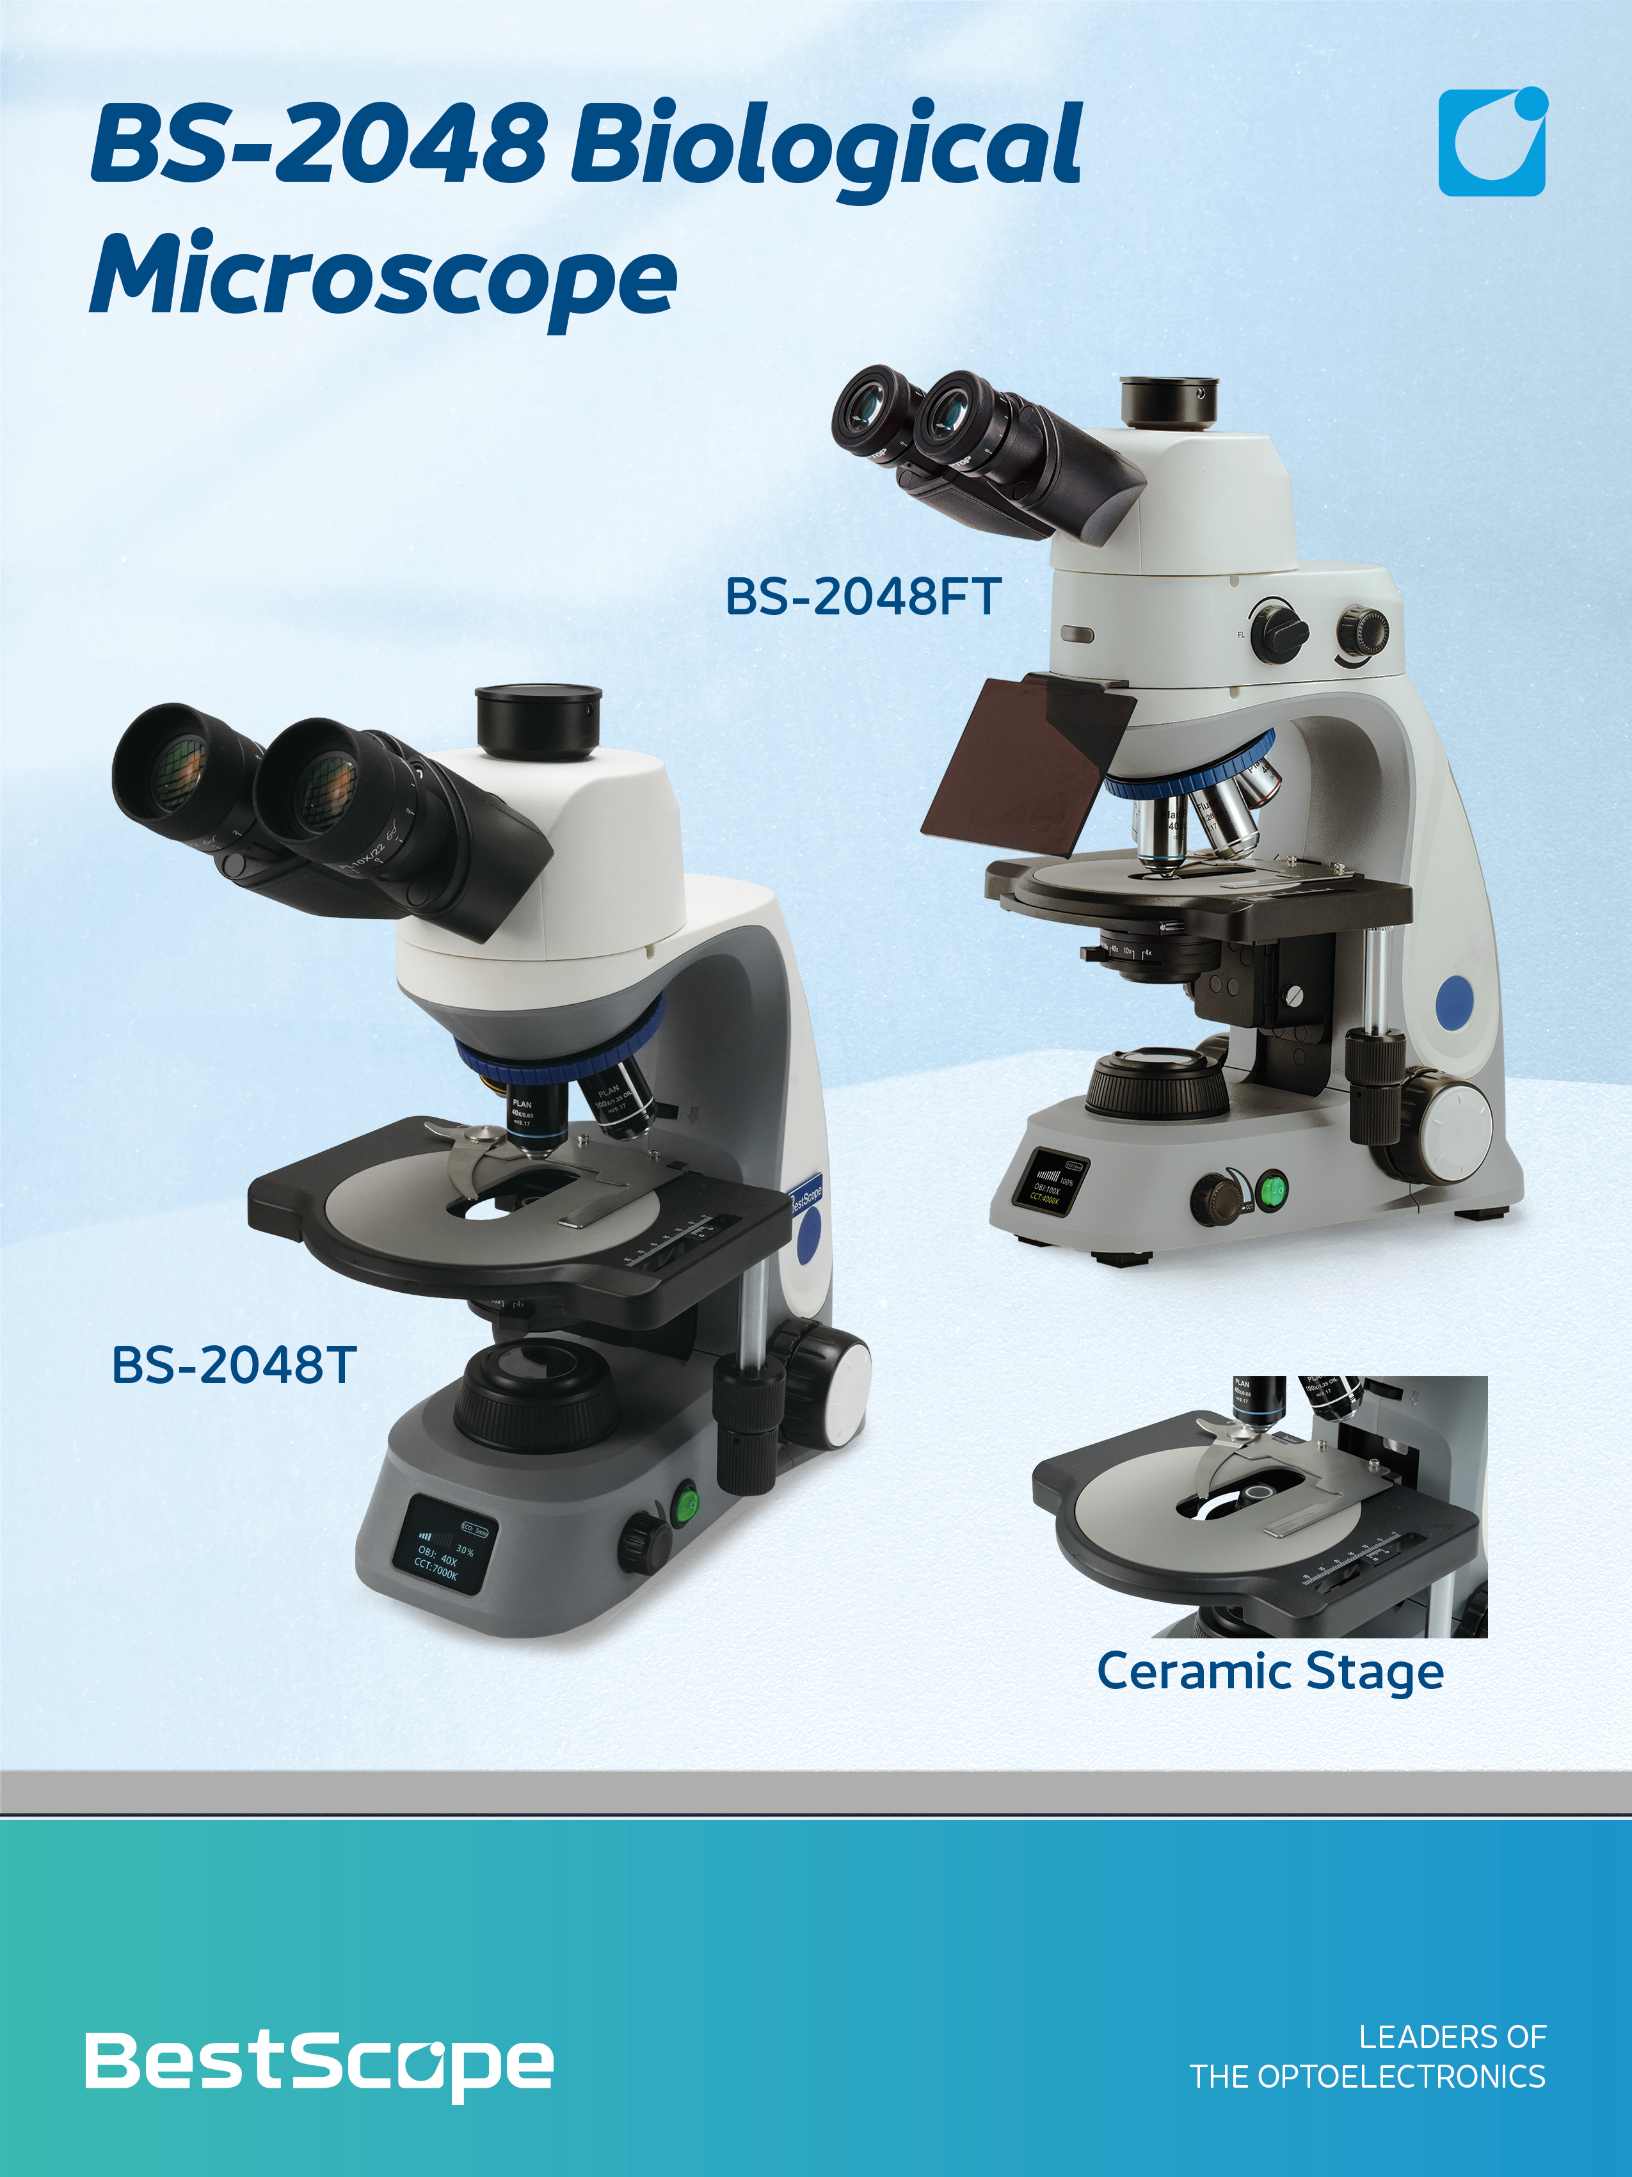 میکروسکوپ بیولوژیکی BS-2048